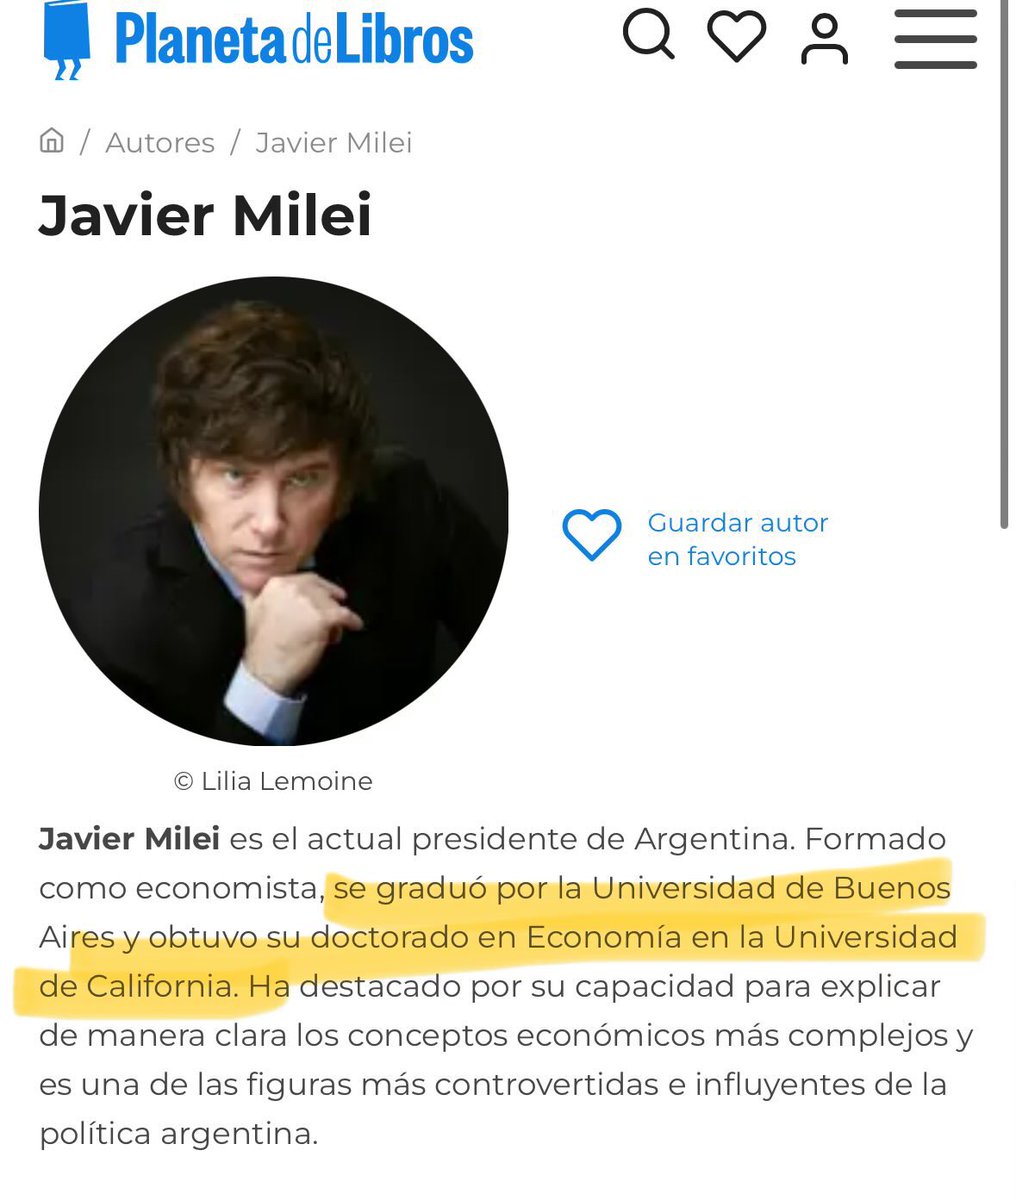 Denosta a la universidad pública, pero Milei en su biografía se pone que es EGRESADO DE LA UBA siendo que se recibió en la Universidad de Belgrano. Que mentiroso, por favor.